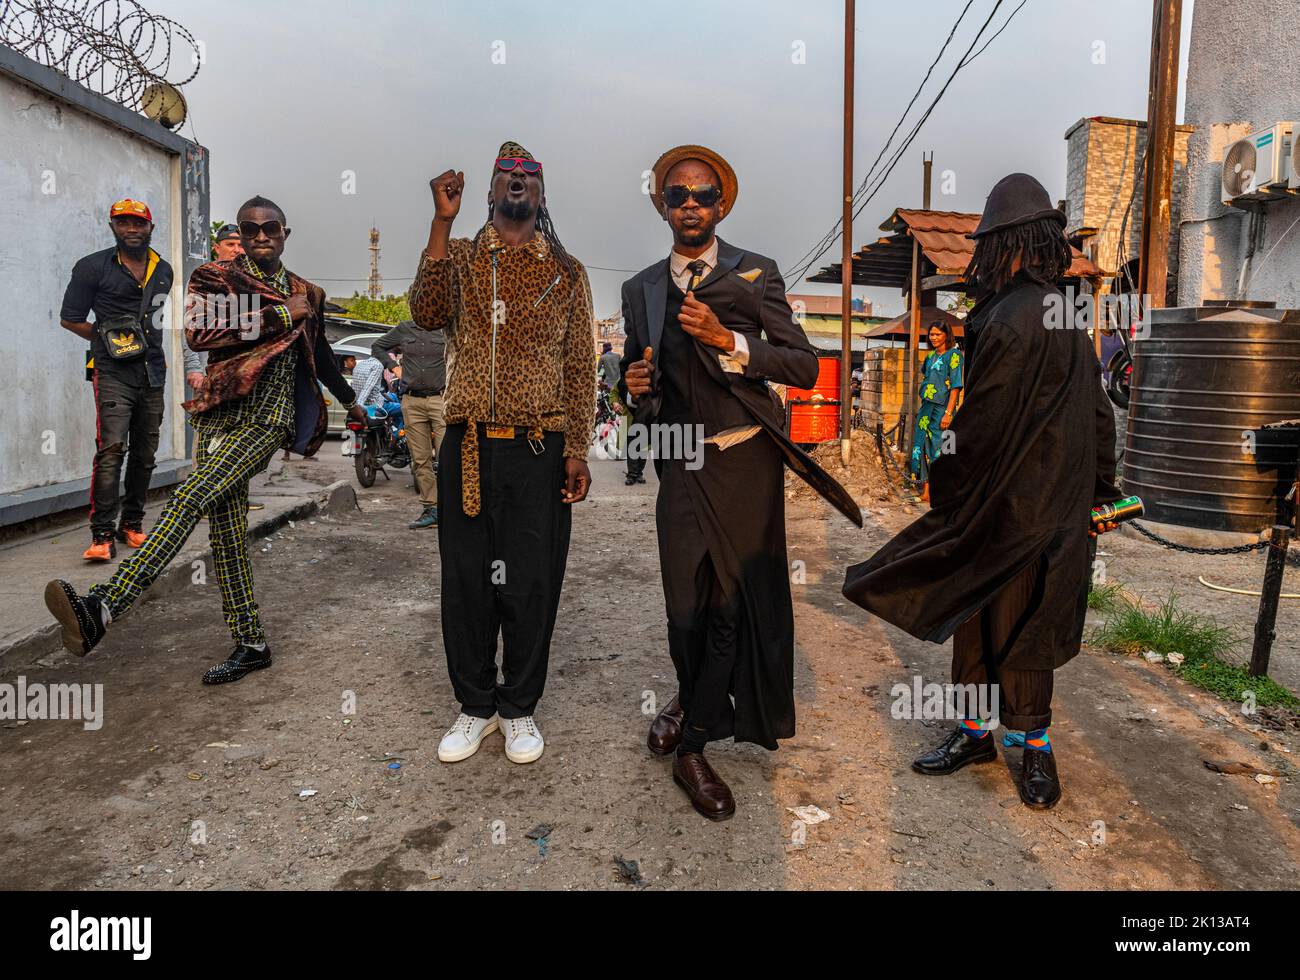 El movimiento La Sape encarna la elegancia en estilo y modales de los dandies de su predecesor colonial, Kinshasa, República Democrática del Congo, África Foto de stock